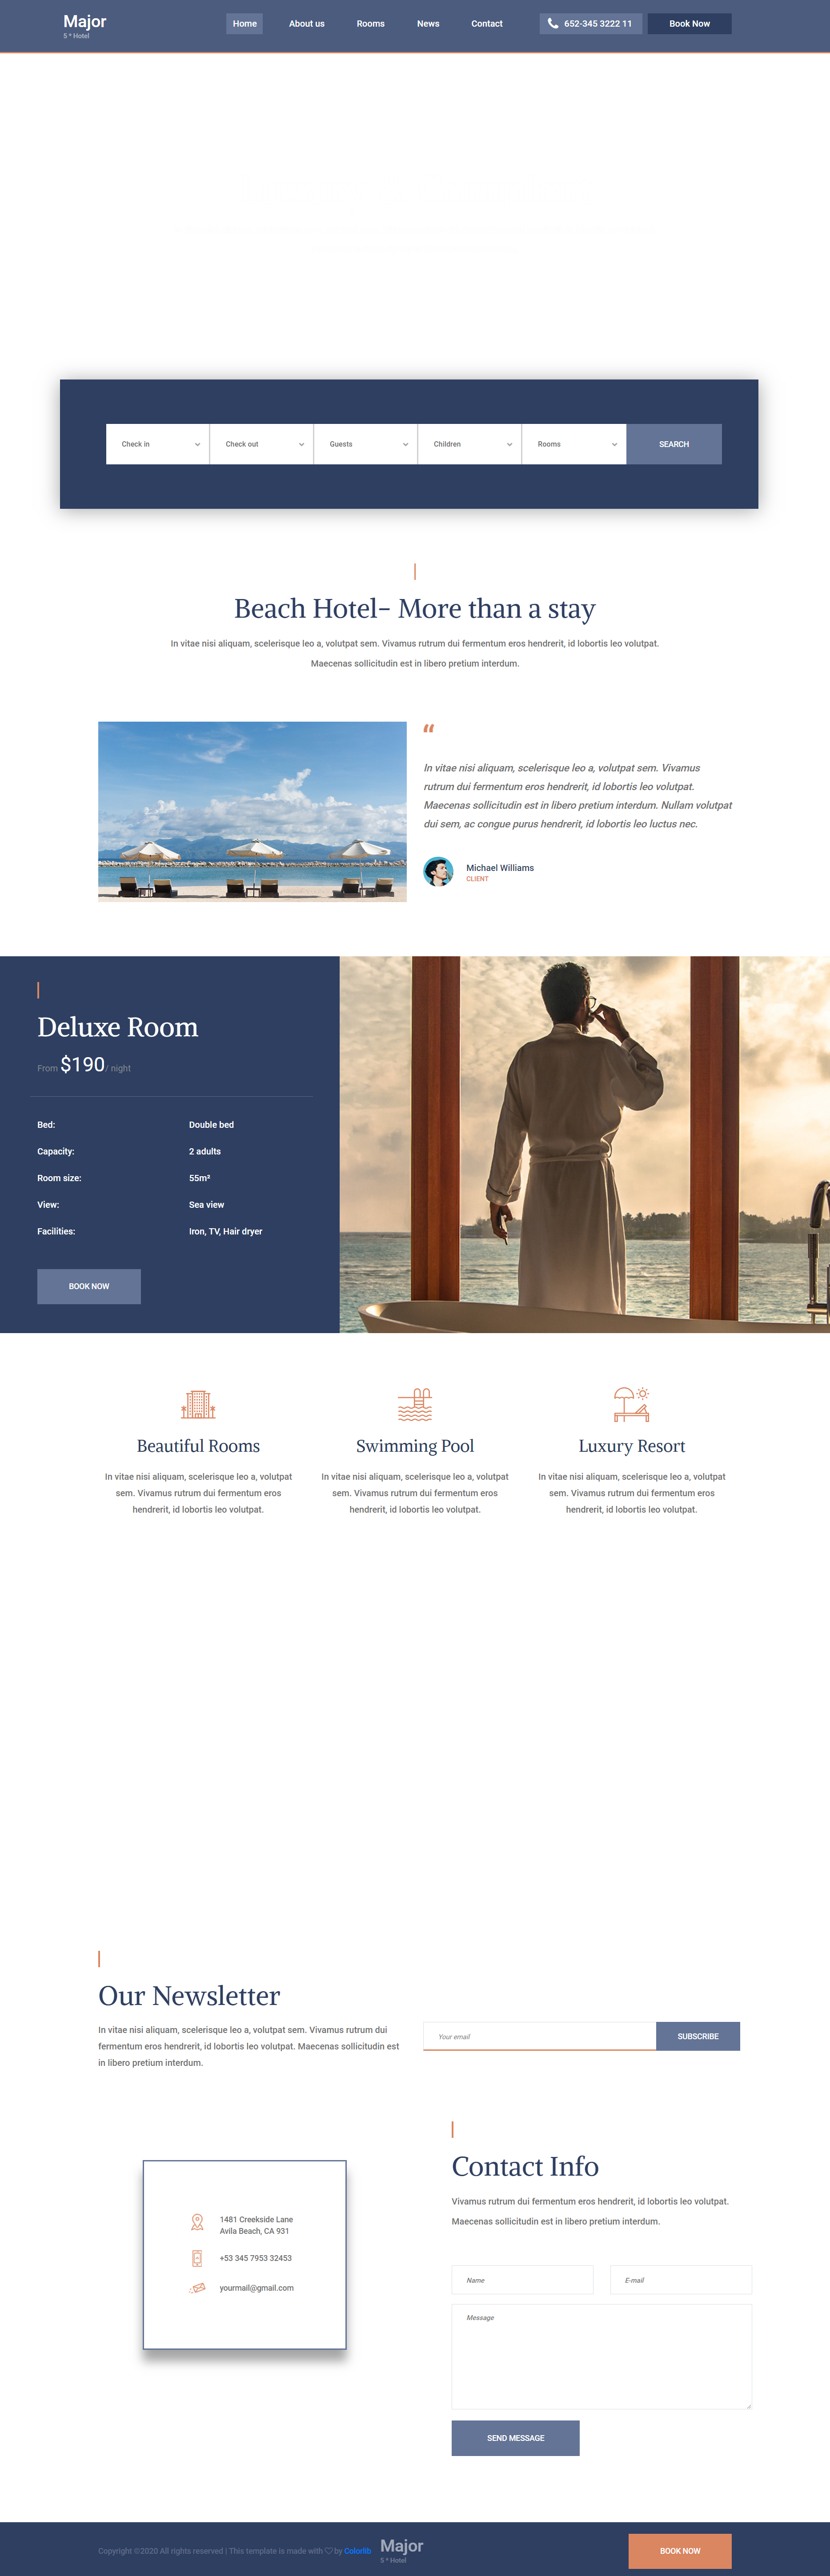 红色欧美风格响应式高级五星酒店网页模板